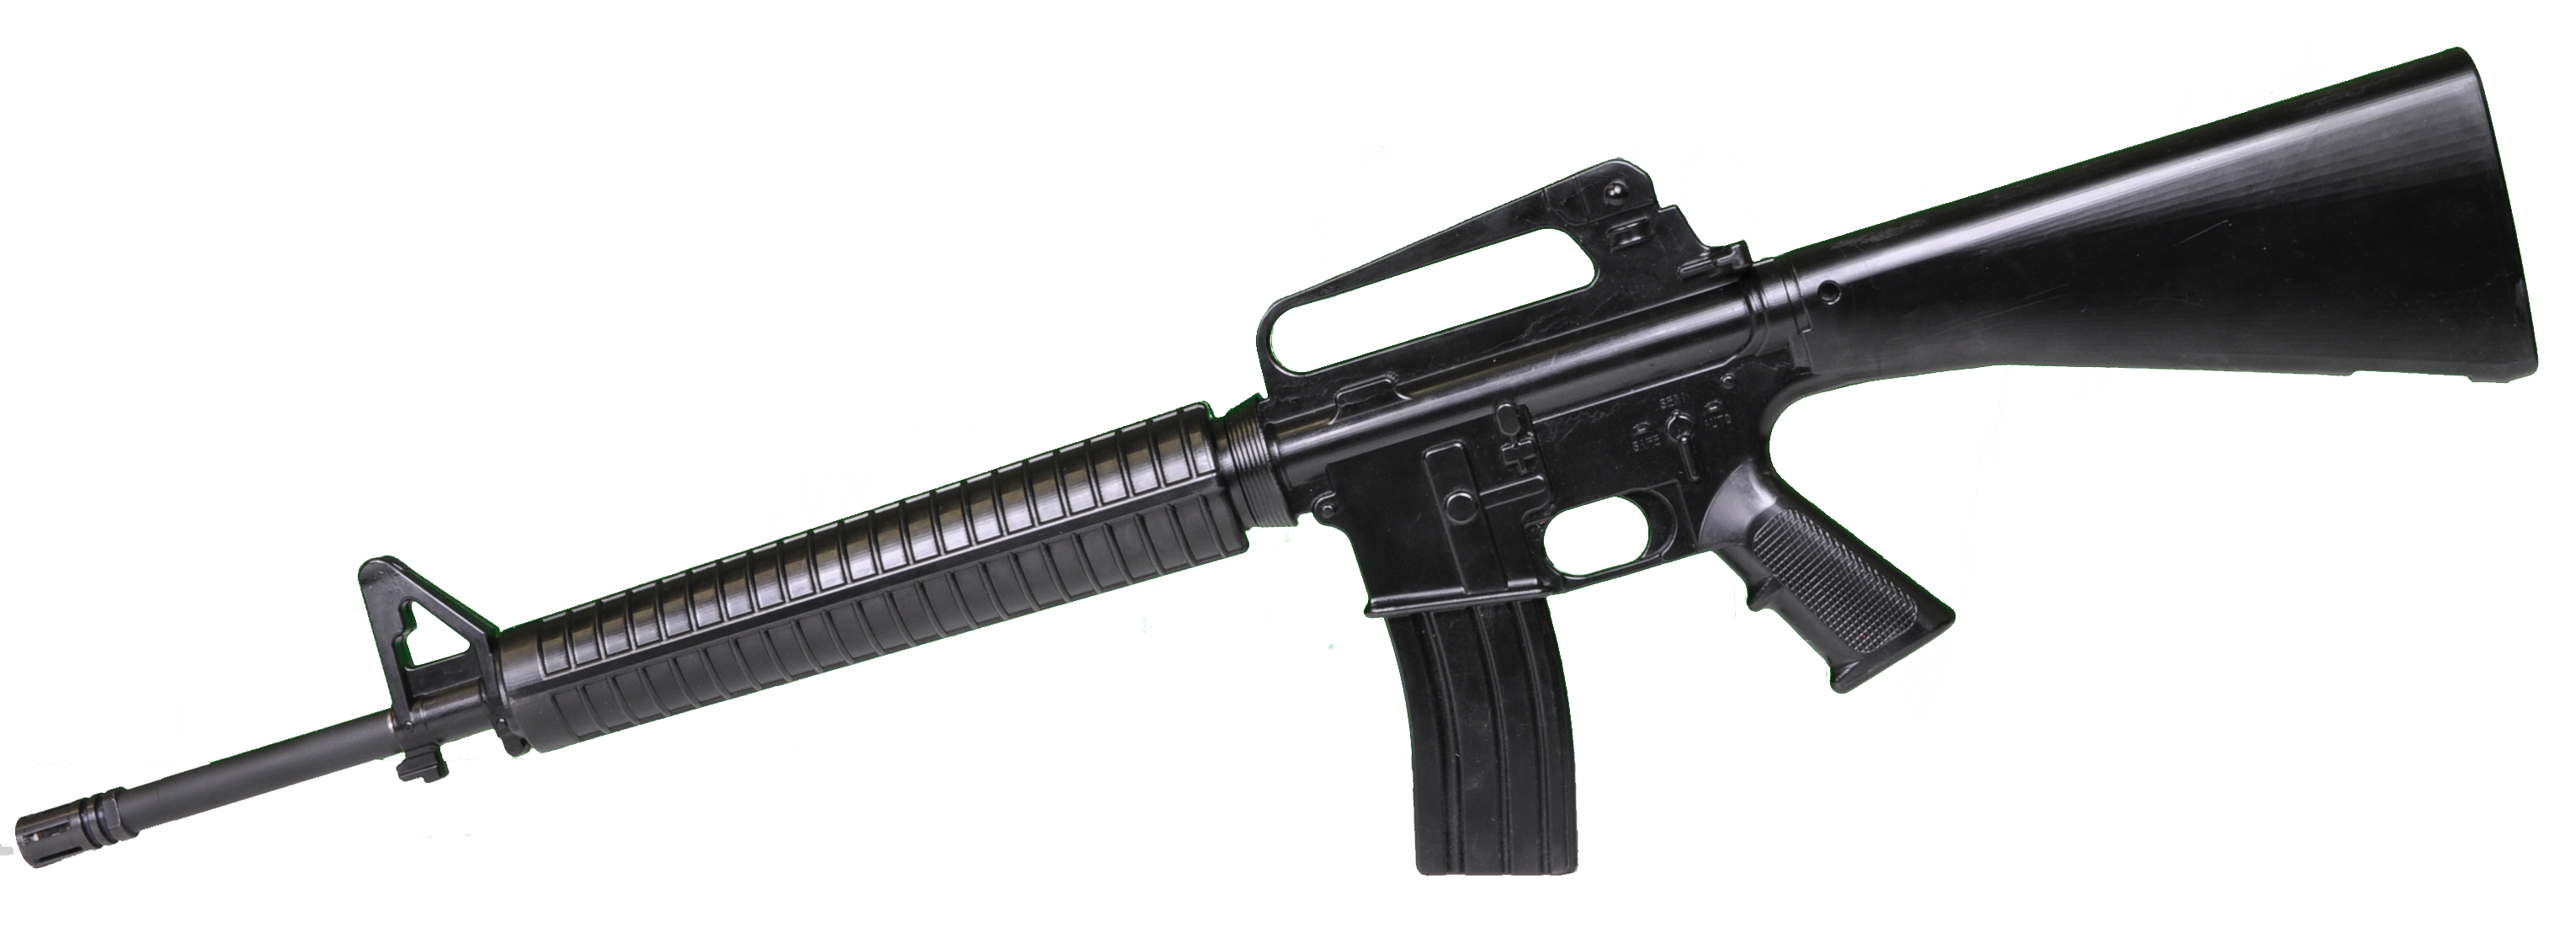 M16アメリカンアサルトライフル